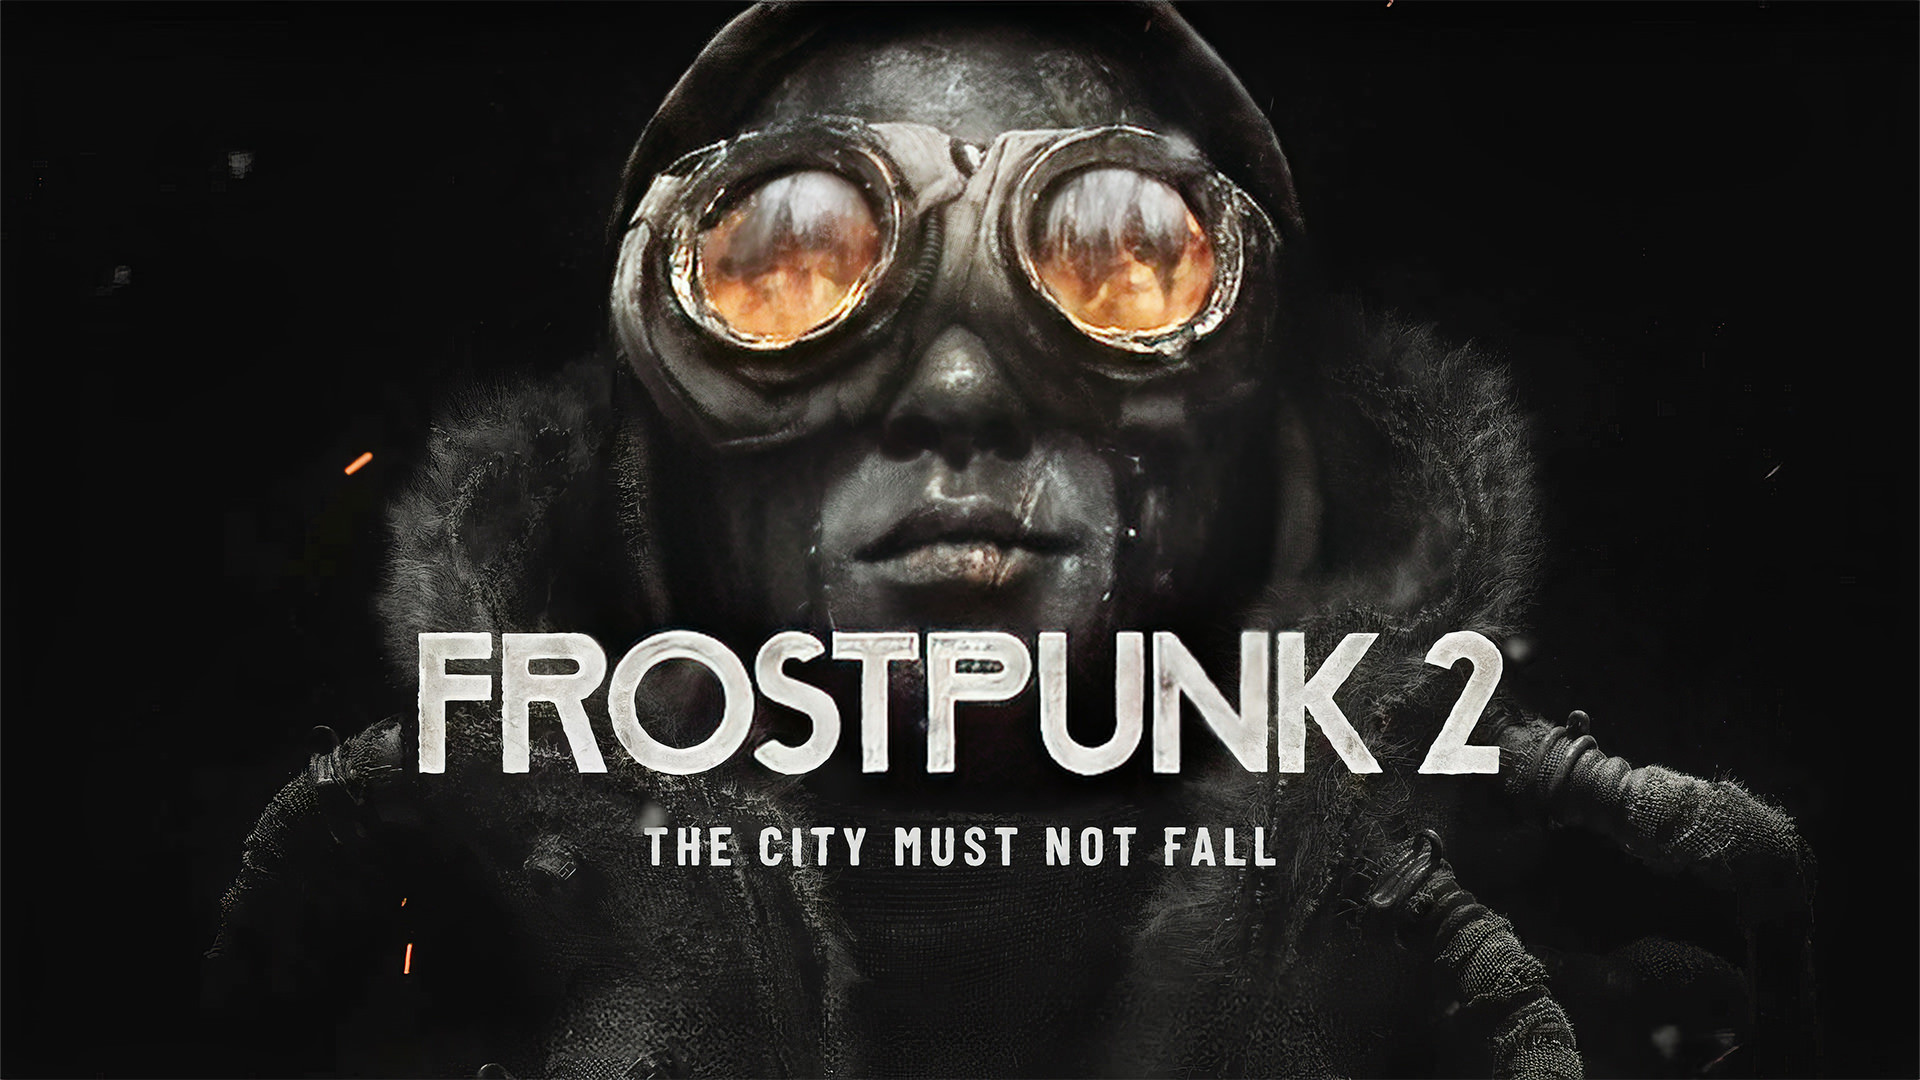 اعلام تاریخ انتشار بازی Frostpunk 2 در تریلر جدید